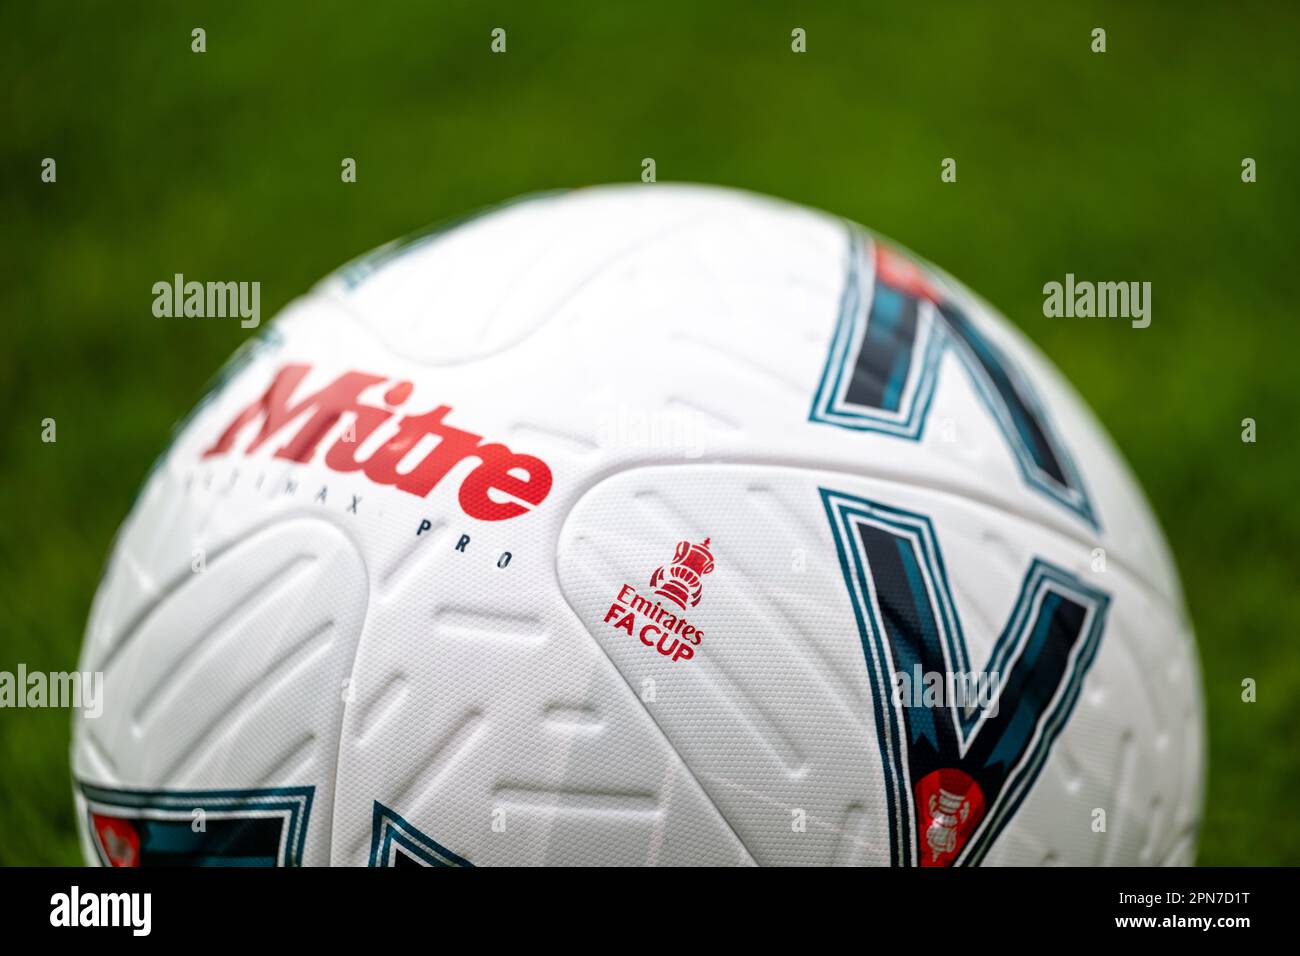 Mitre Pro Delta FA Cup Ball Stock Photo